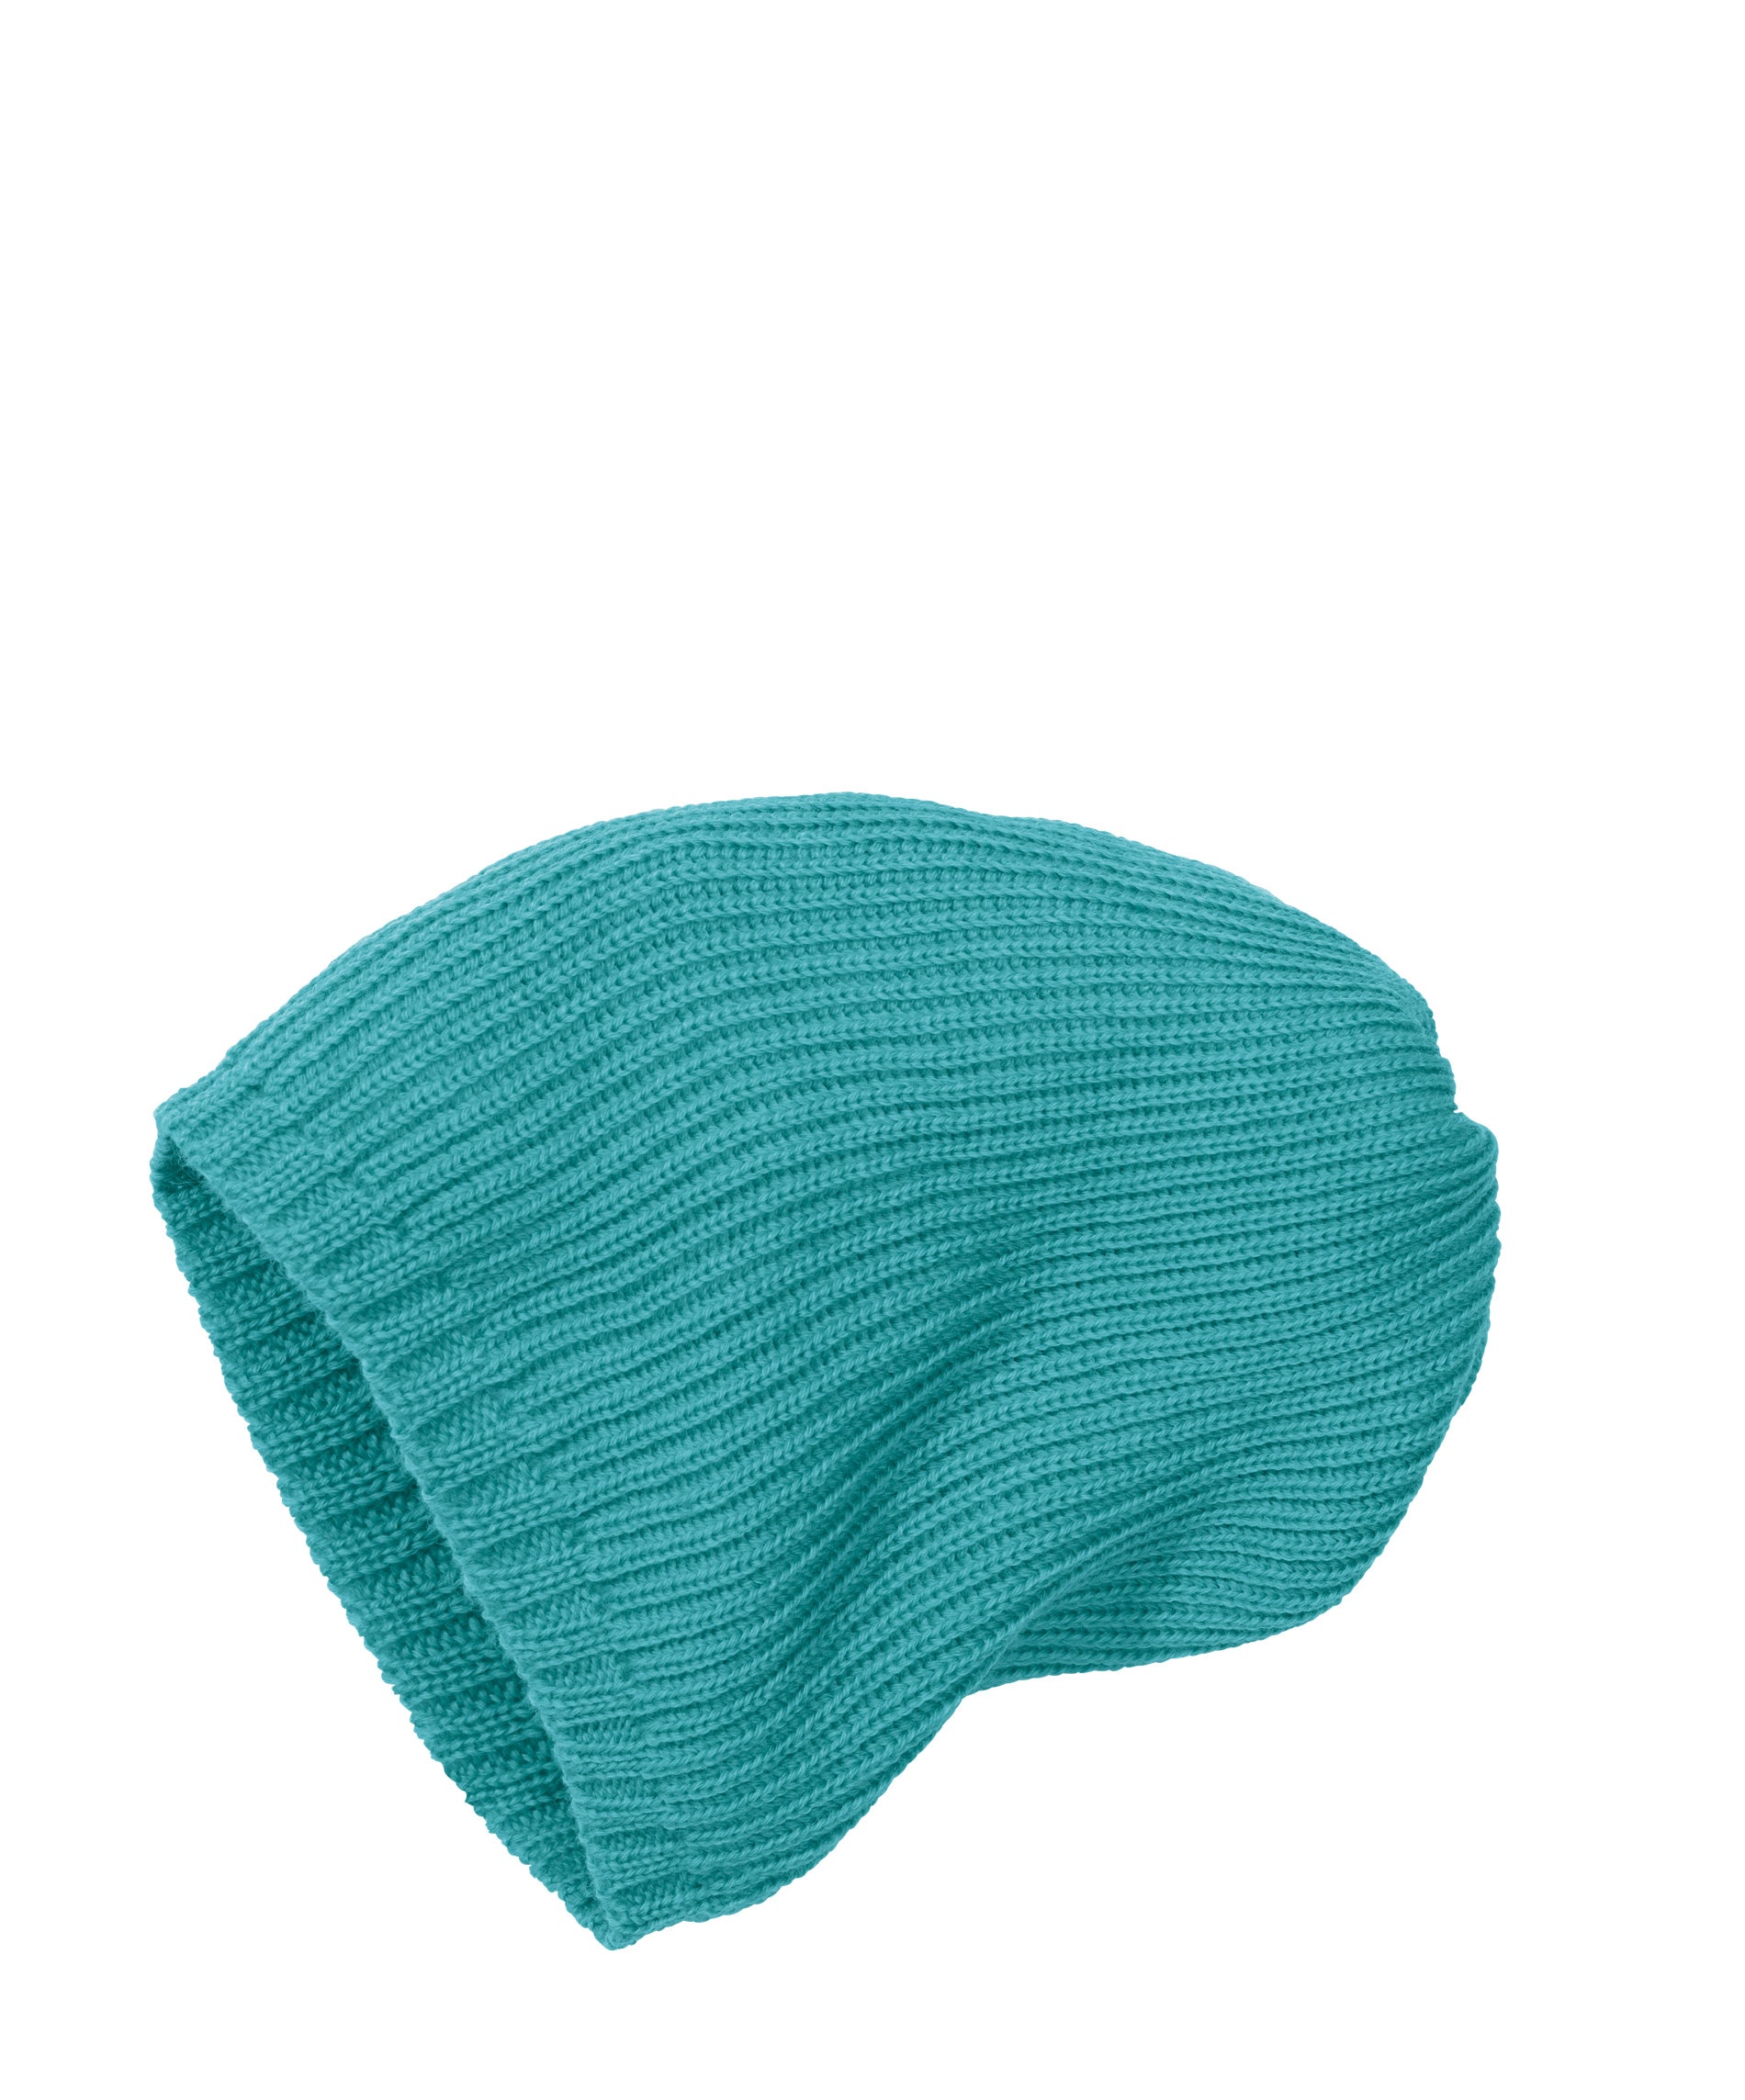 Disana Knitted Wool Hat Lagoon - Muts Gebreide Wol Turquoise Blauw